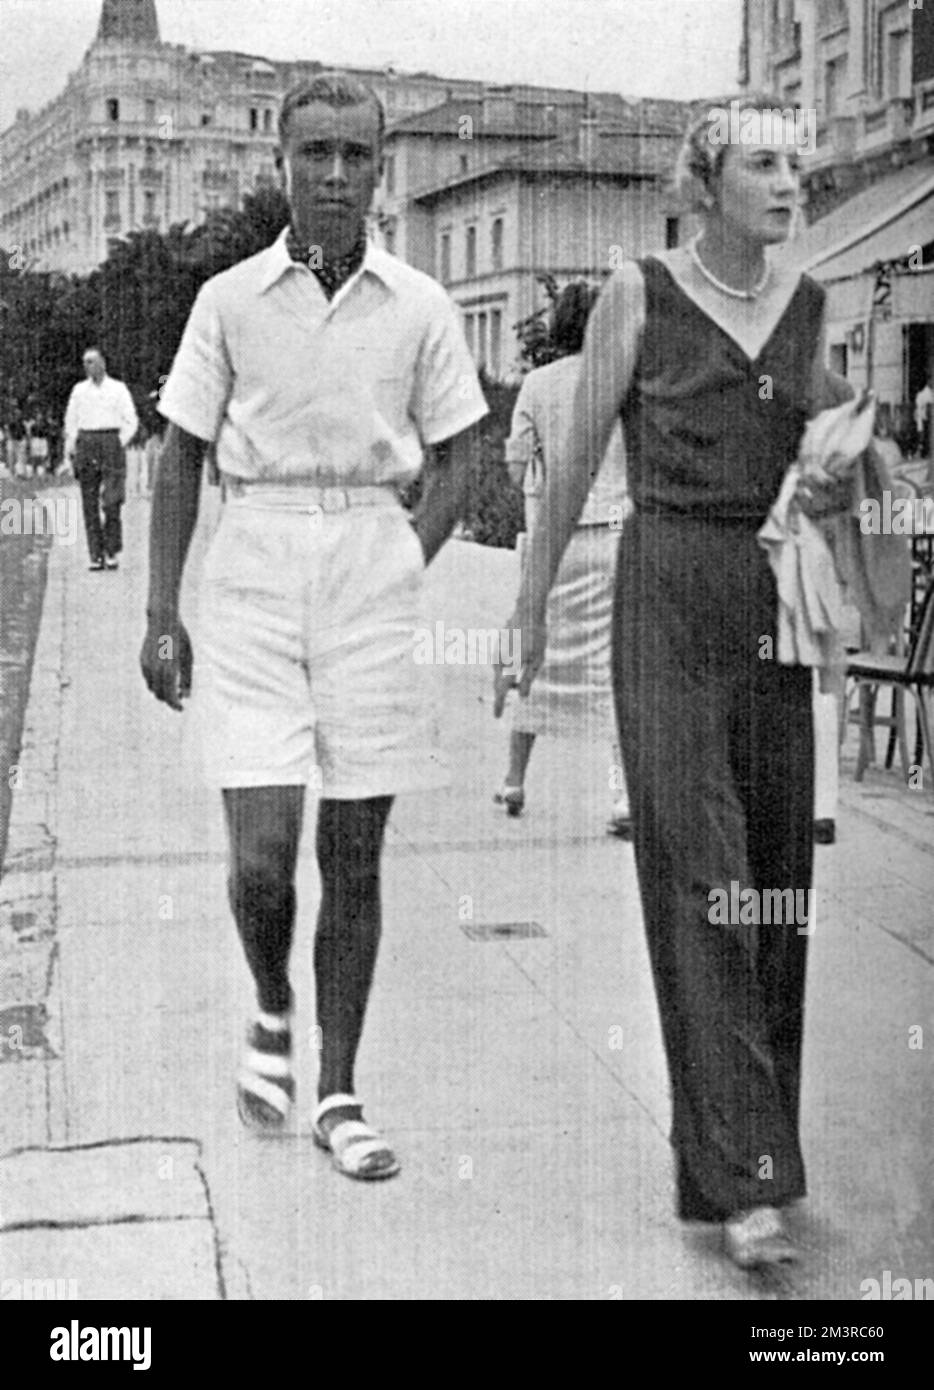 Un uomo che indossa una polo bianca, bottoni-up, pantaloncini bianchi e sandali bianchi, mostrando chiaramente l'influenza del tennis sulla moda - un tipico vestito indossato sulla Costa Azzurra durante gli anni '1930s. Data: 1934 Foto Stock